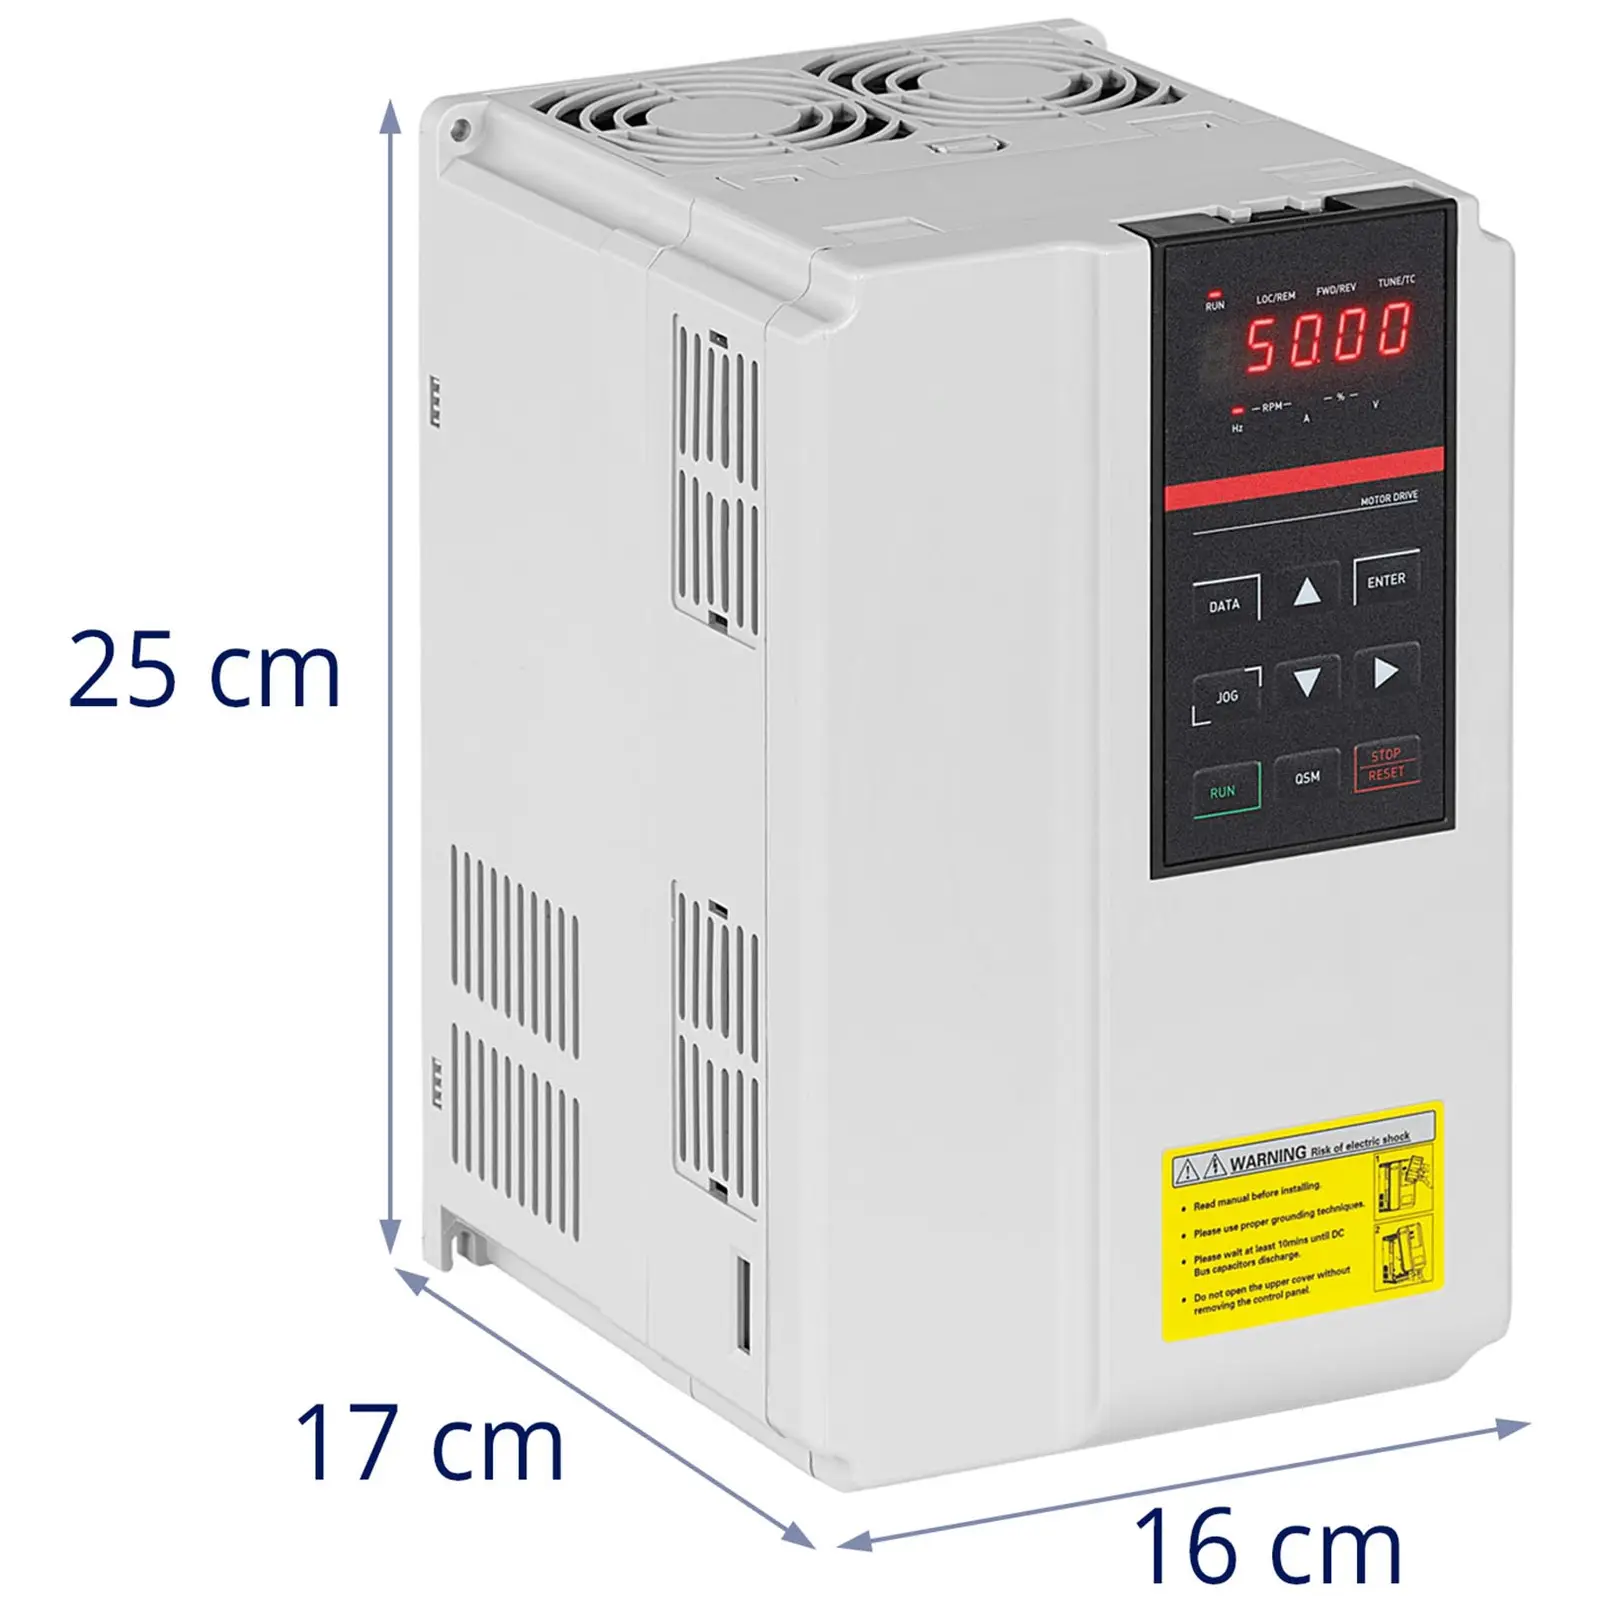 Convertor de frecvență - 5,5 kW / 7,5 CP - 400 V - {{frecvență_409_temp}} Hz - LED